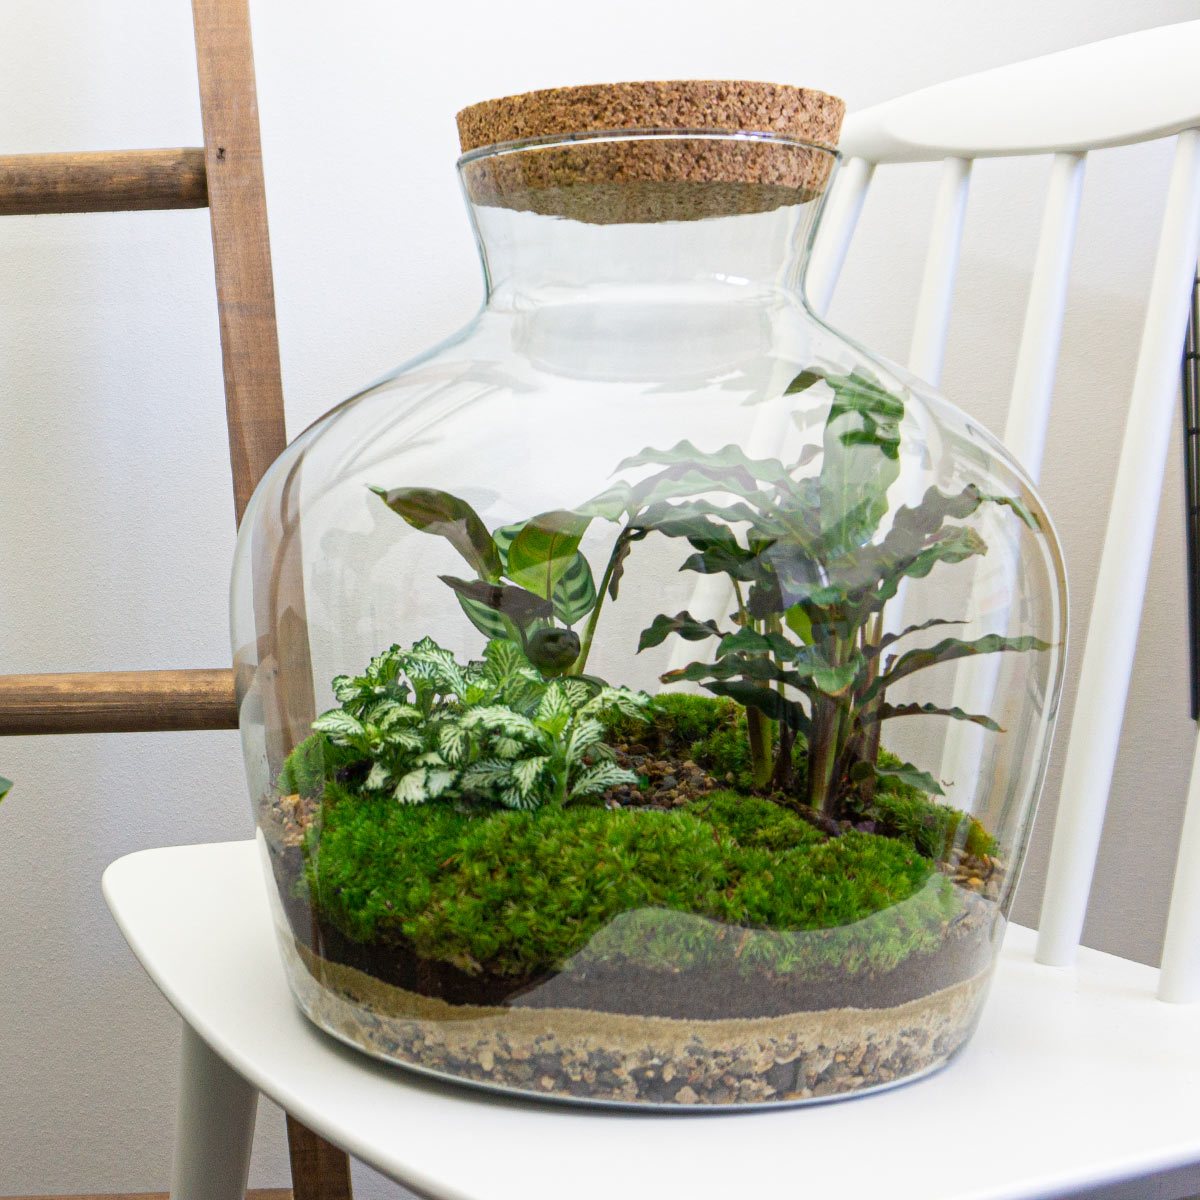 Leerling Afleiden Makkelijk in de omgang Terrarium DIY Kit • Fat Joe • Ecosystem with plants • ↑ 30 cm – urbanjngl